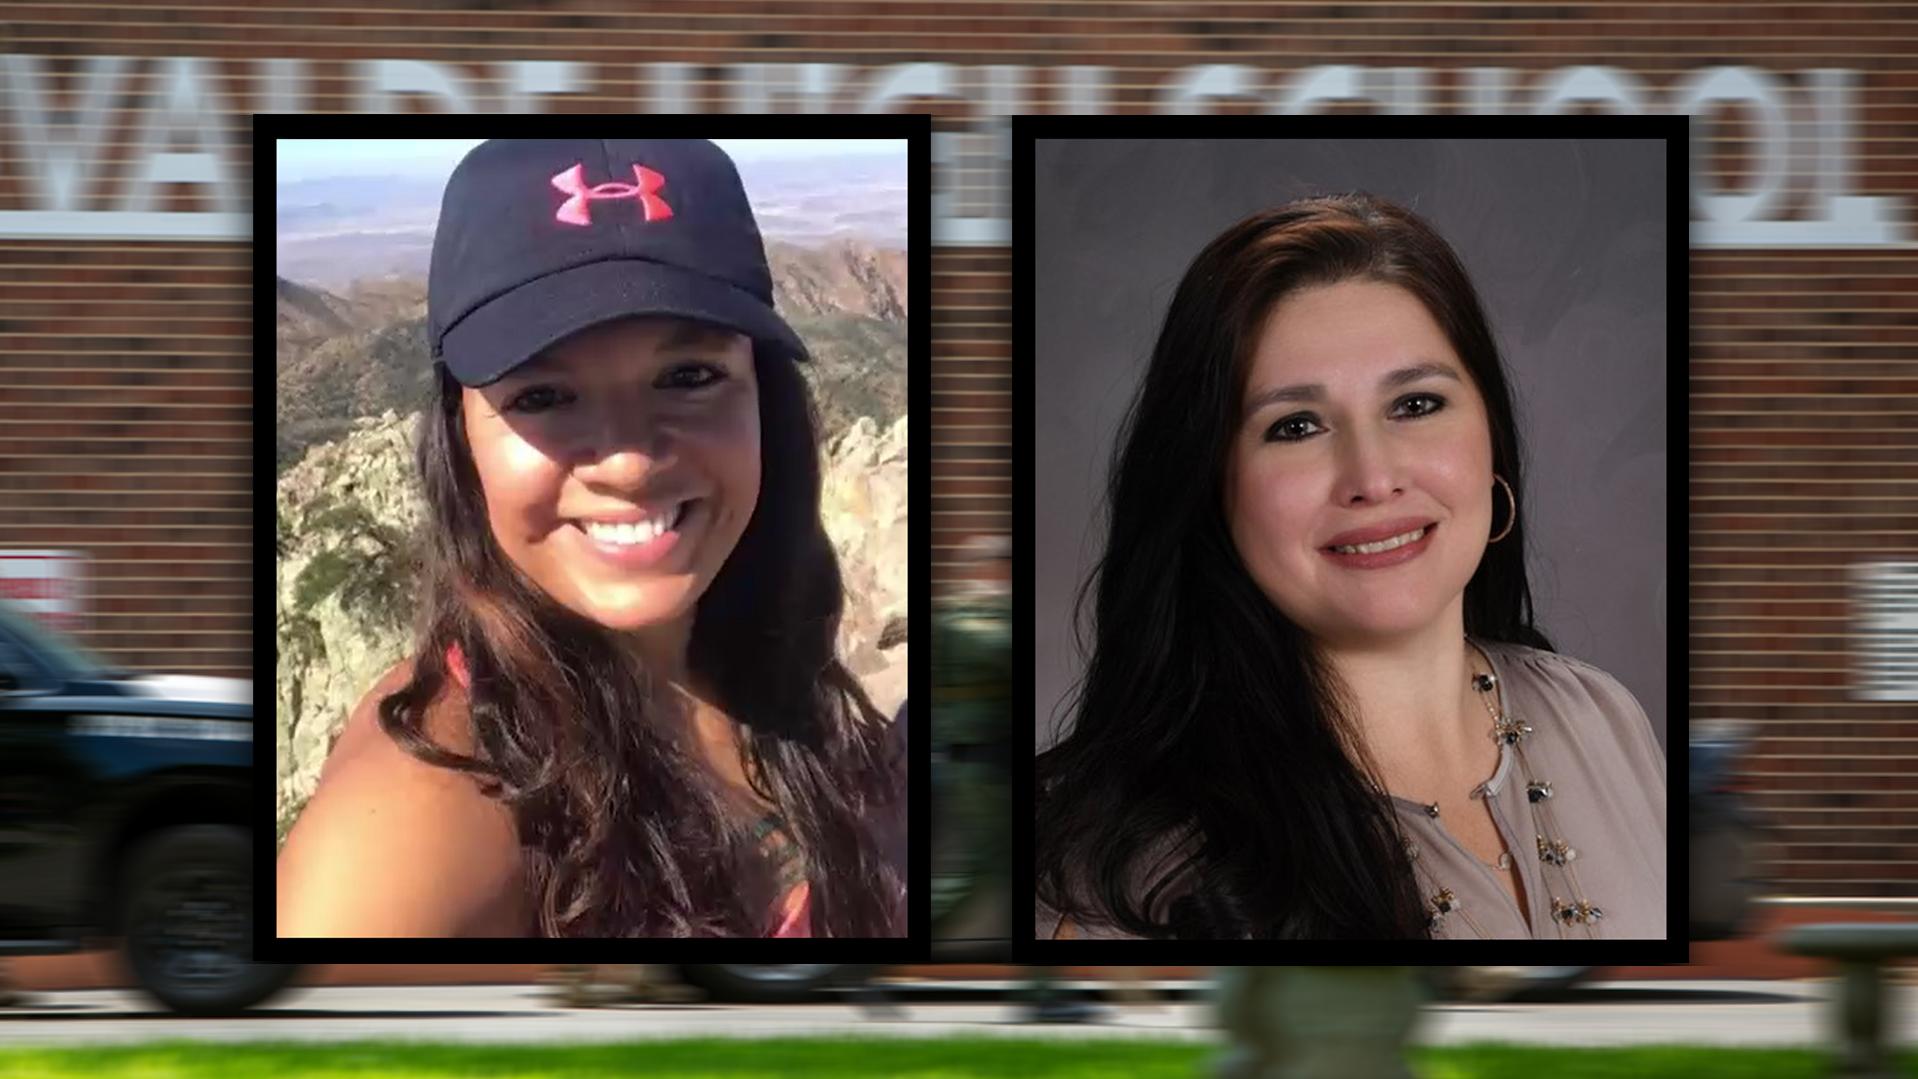 Eva Mirelles und Irma Garcia wurden beim Amoklauf in Texas getötet.